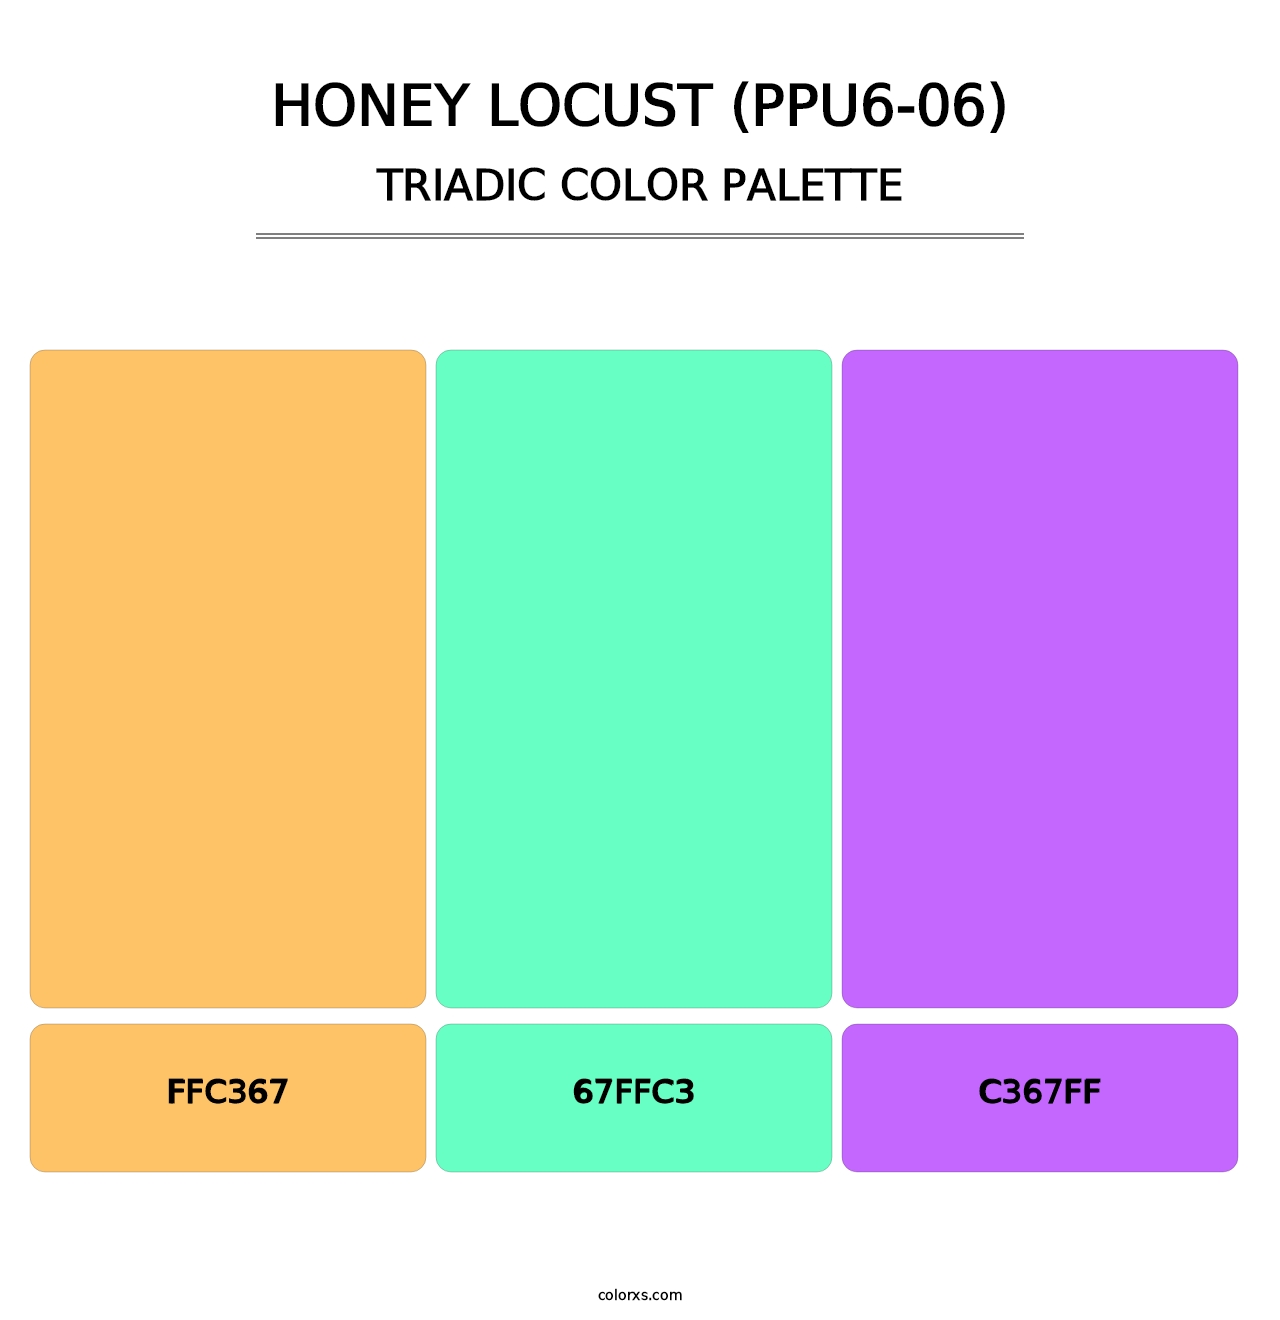 Honey Locust (PPU6-06) - Triadic Color Palette